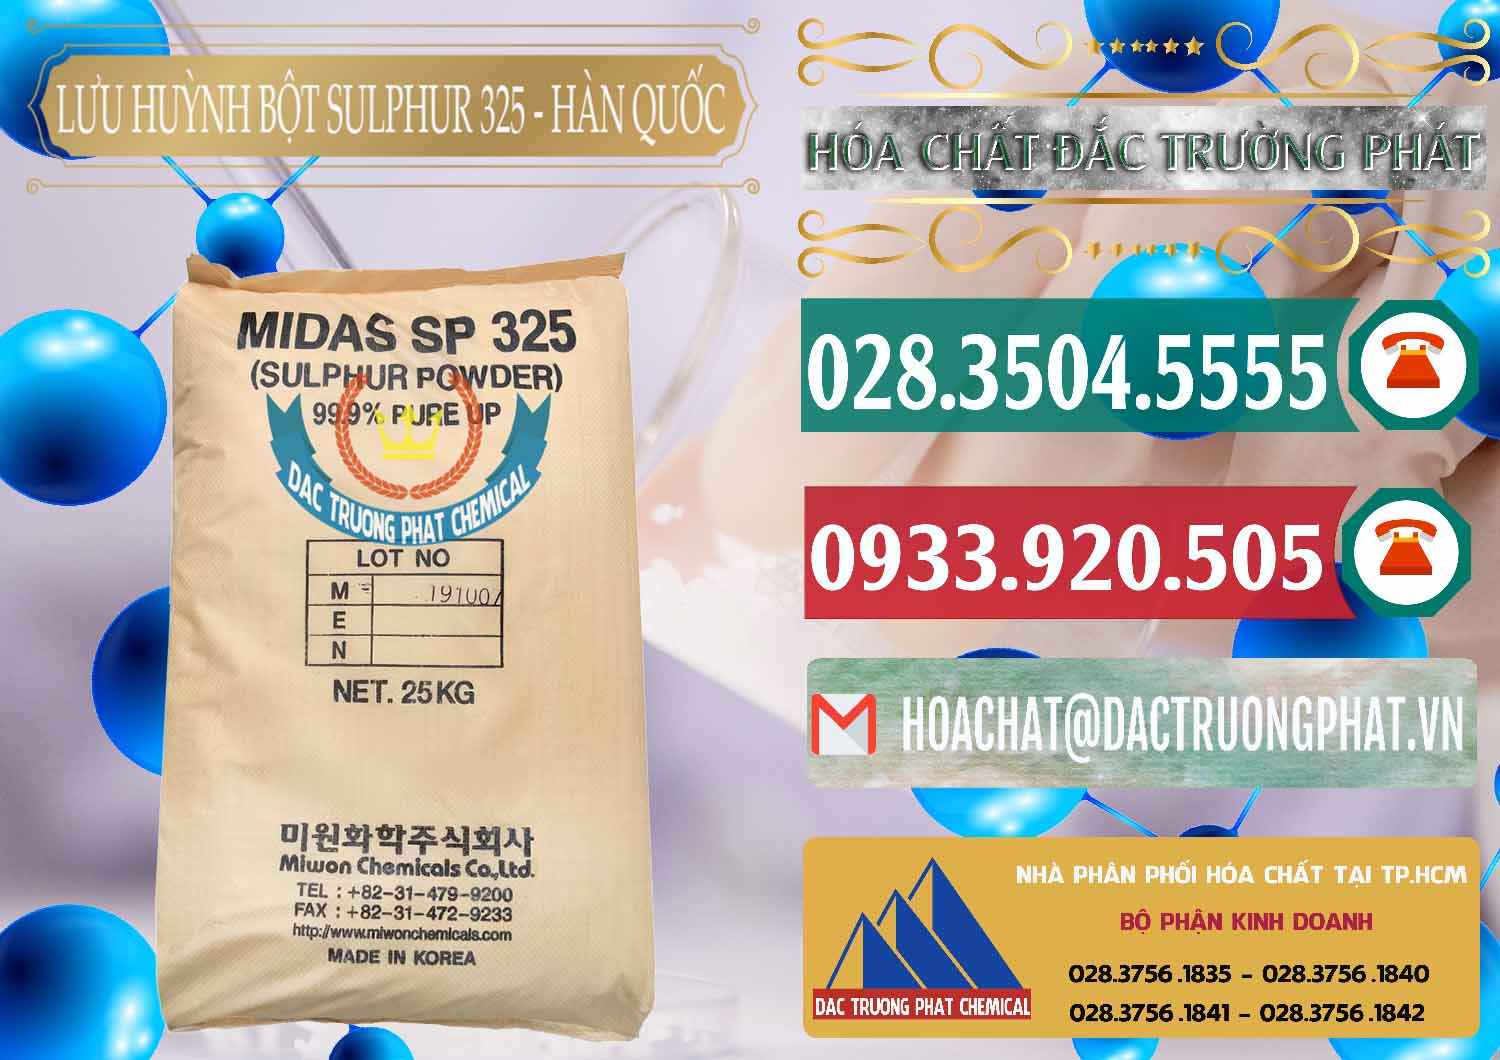 Công ty bán ( cung cấp ) Lưu huỳnh Bột - Sulfur Powder Midas SP 325 Hàn Quốc Korea - 0198 - Cty chuyên phân phối và bán hóa chất tại TP.HCM - muabanhoachat.vn